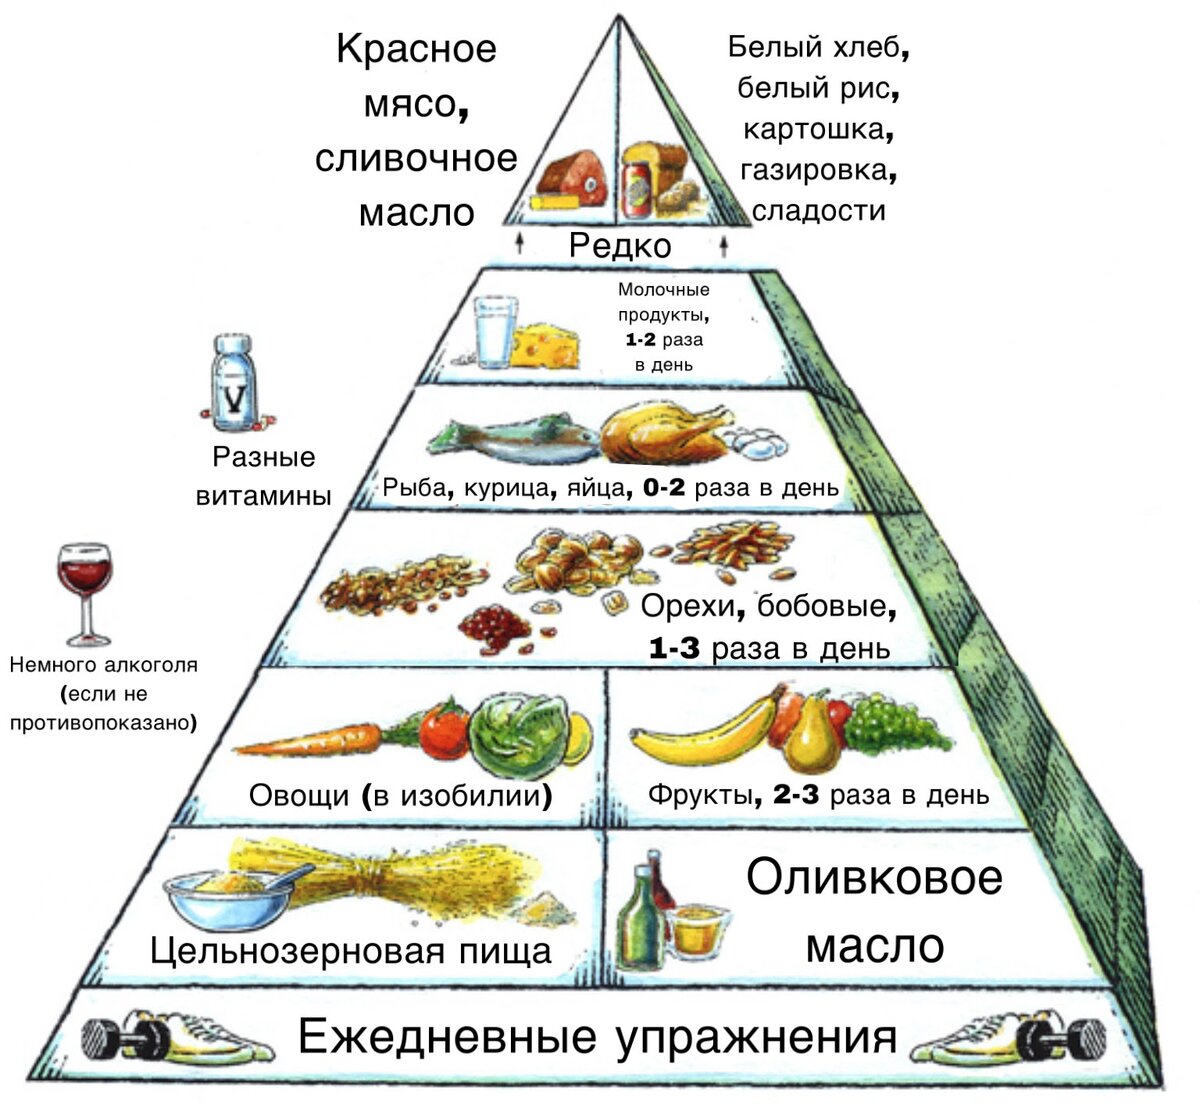 Средиземноморская диета примерное меню. Средиземноморская диета тарелка. Пирамида средиземноморской диеты. Скандинавская диета пирамида. Средиземноморская диета для сердечников.